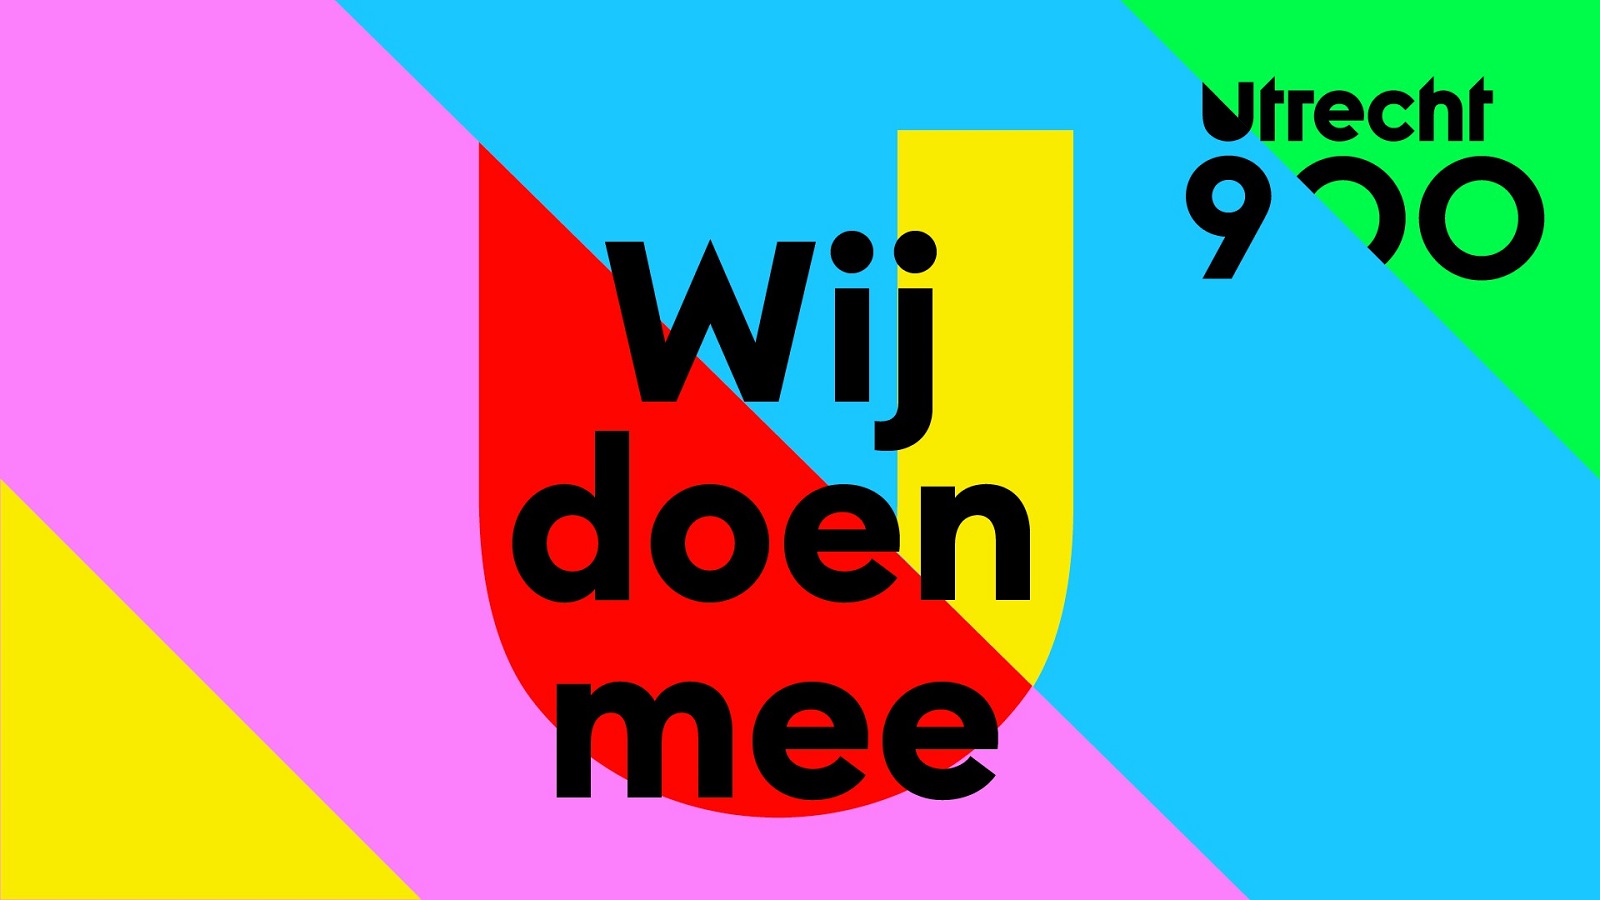 Je bekijkt nu Kunstliefde organiseert workshops vaandels maken voor Utrecht 900 bij WIJ 3.0